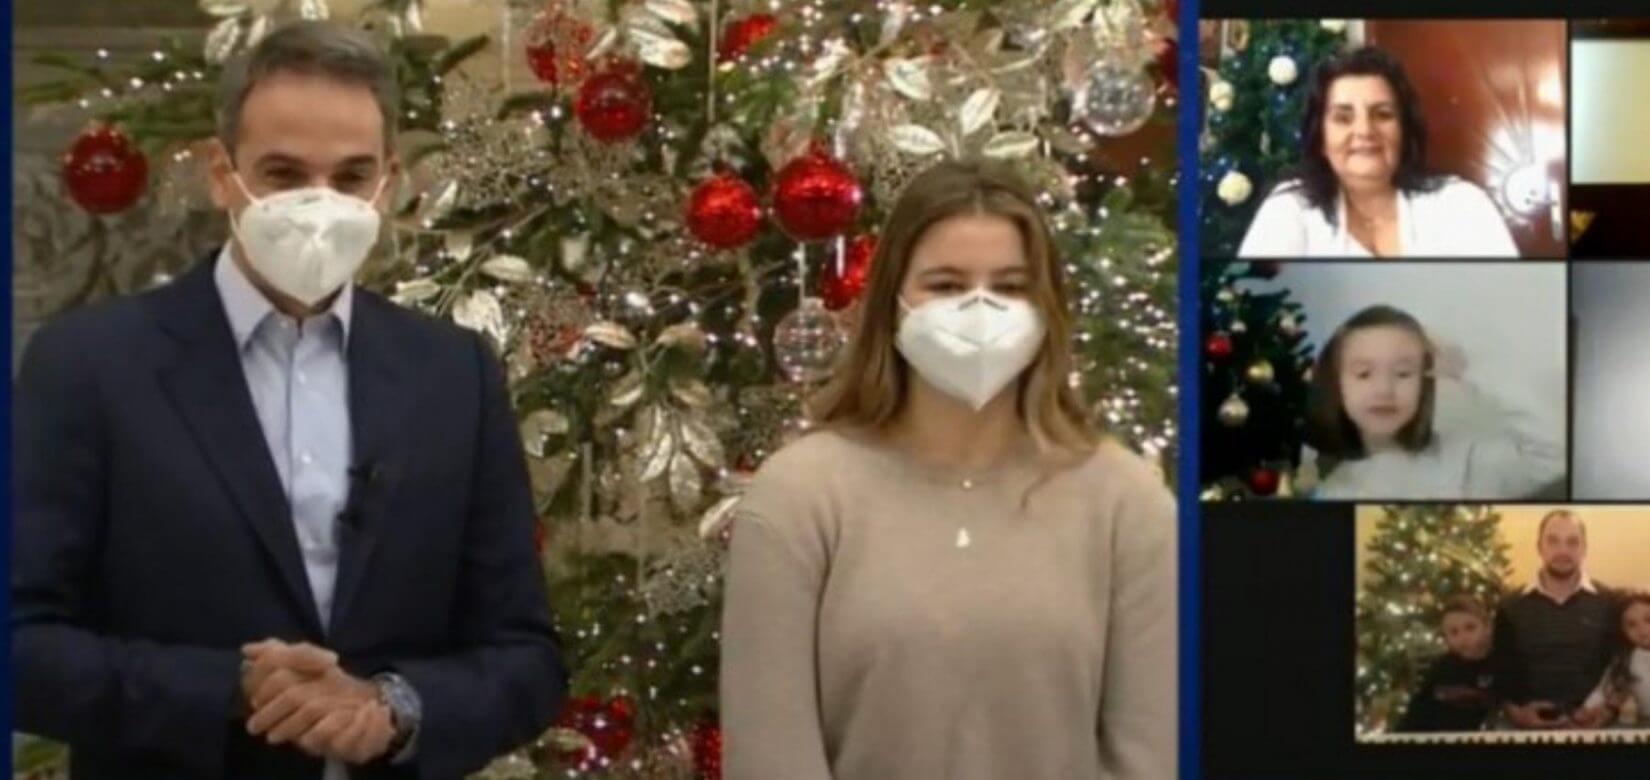 Μαθητές έψαλλαν διαδικτυακά τα κάλαντα στον πρωθυπουργό και την κόρη του (video)